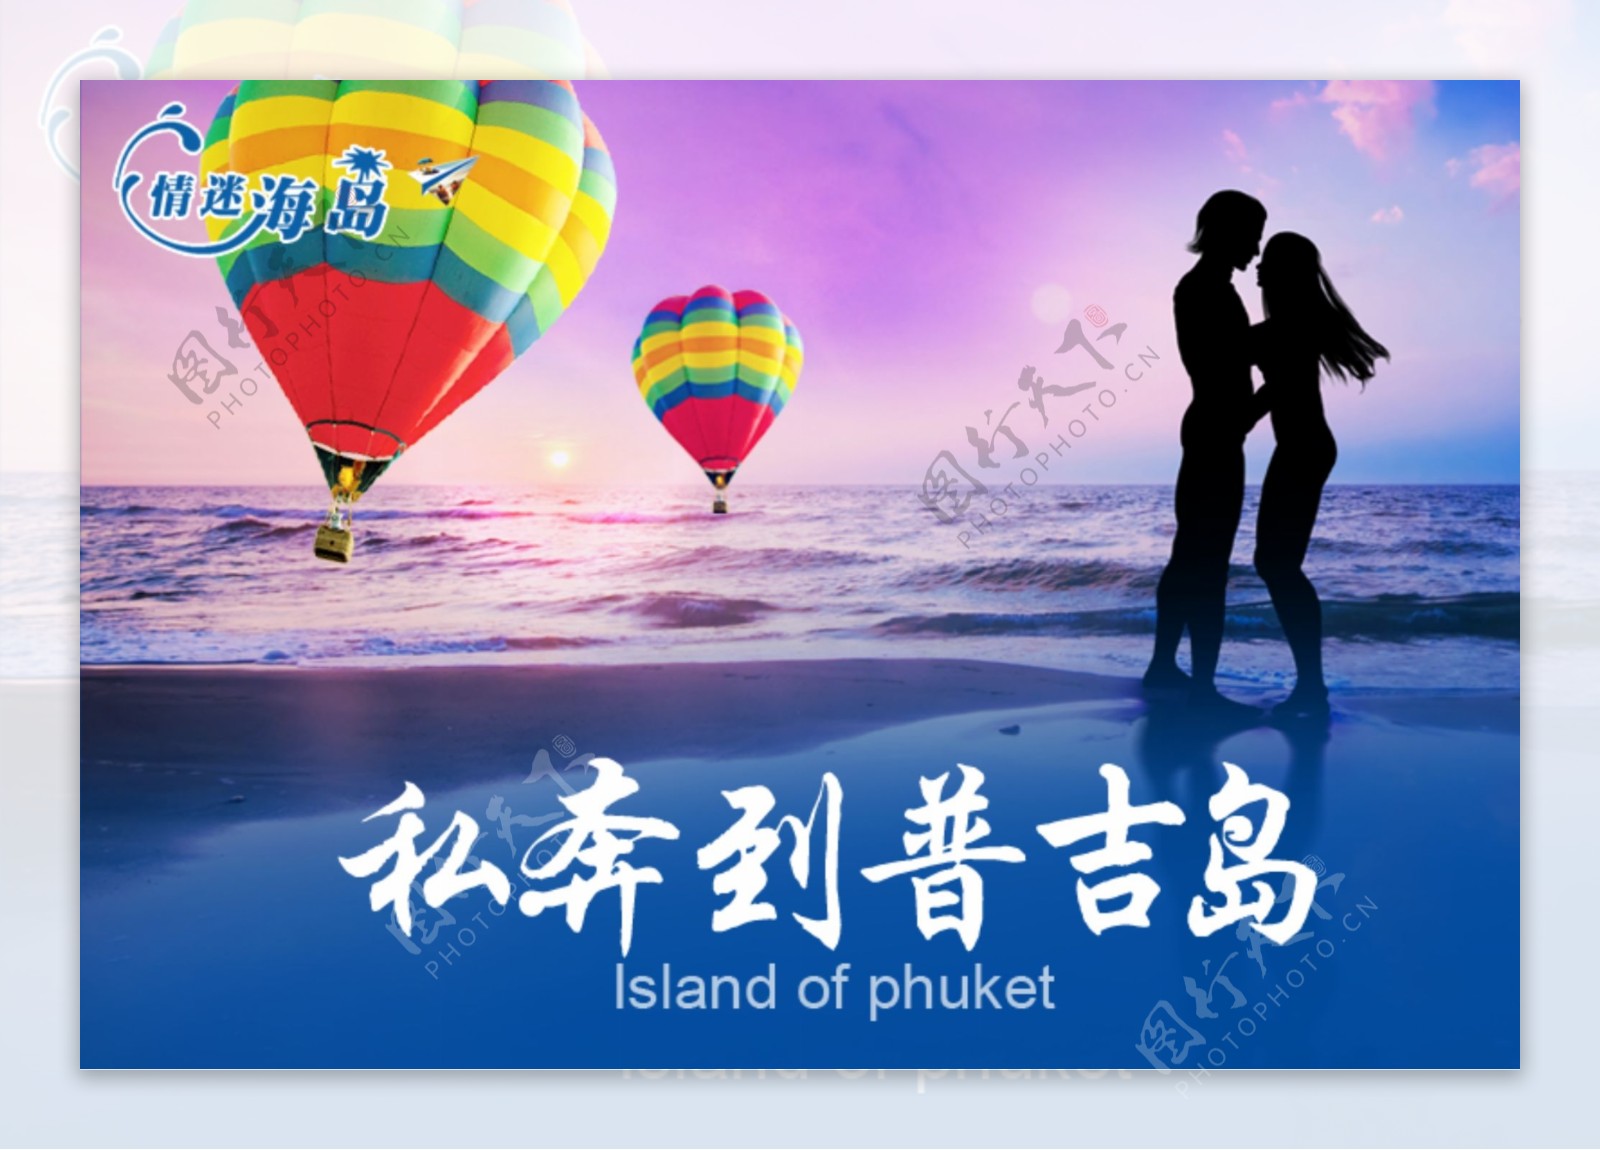 普吉岛情侣海报海岛氢气球热气球